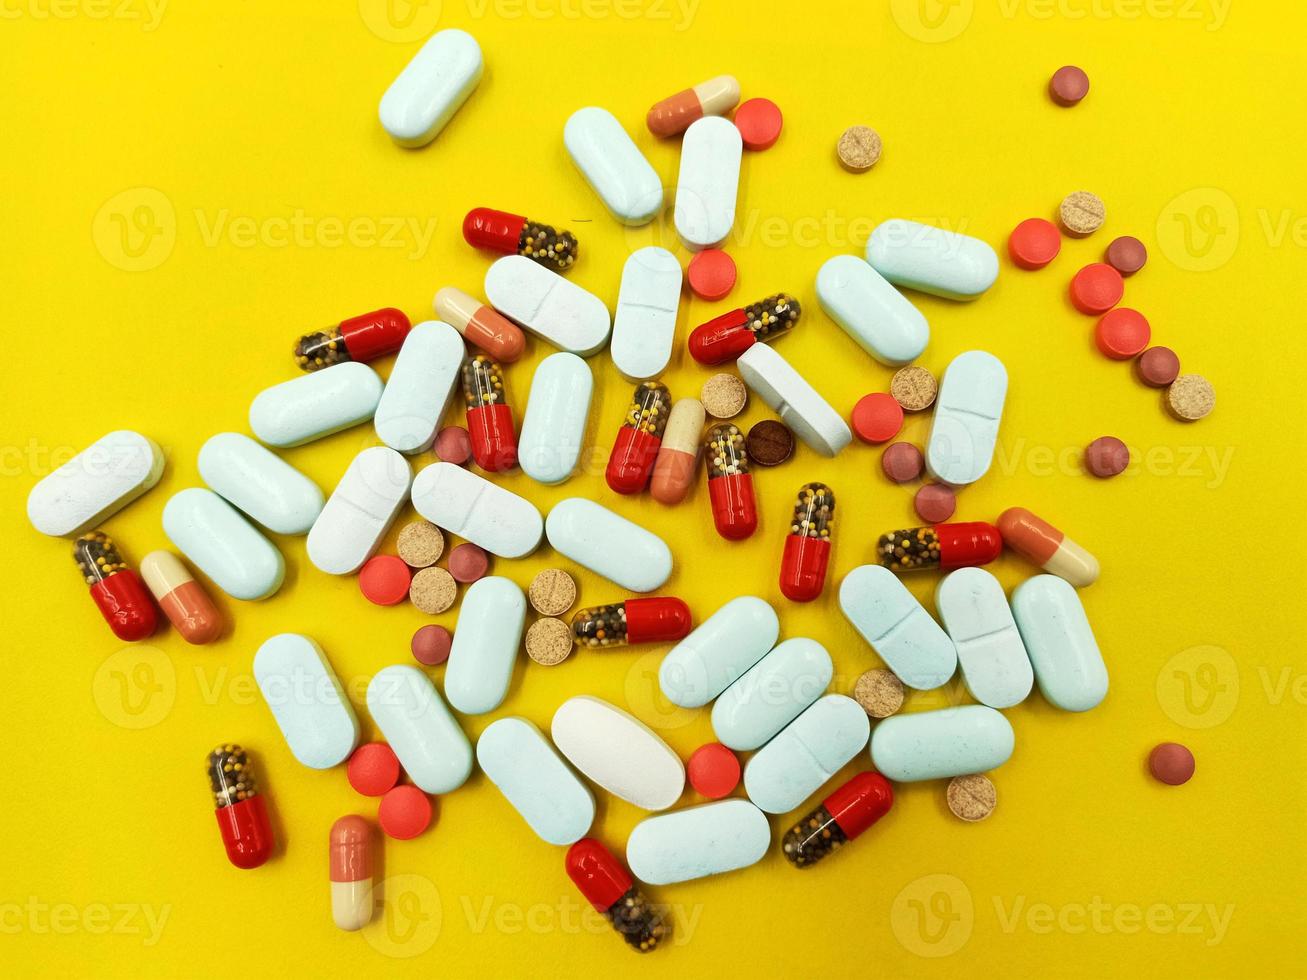 diverse farmaceutiska medicin piller, tabletter och kapslar foto